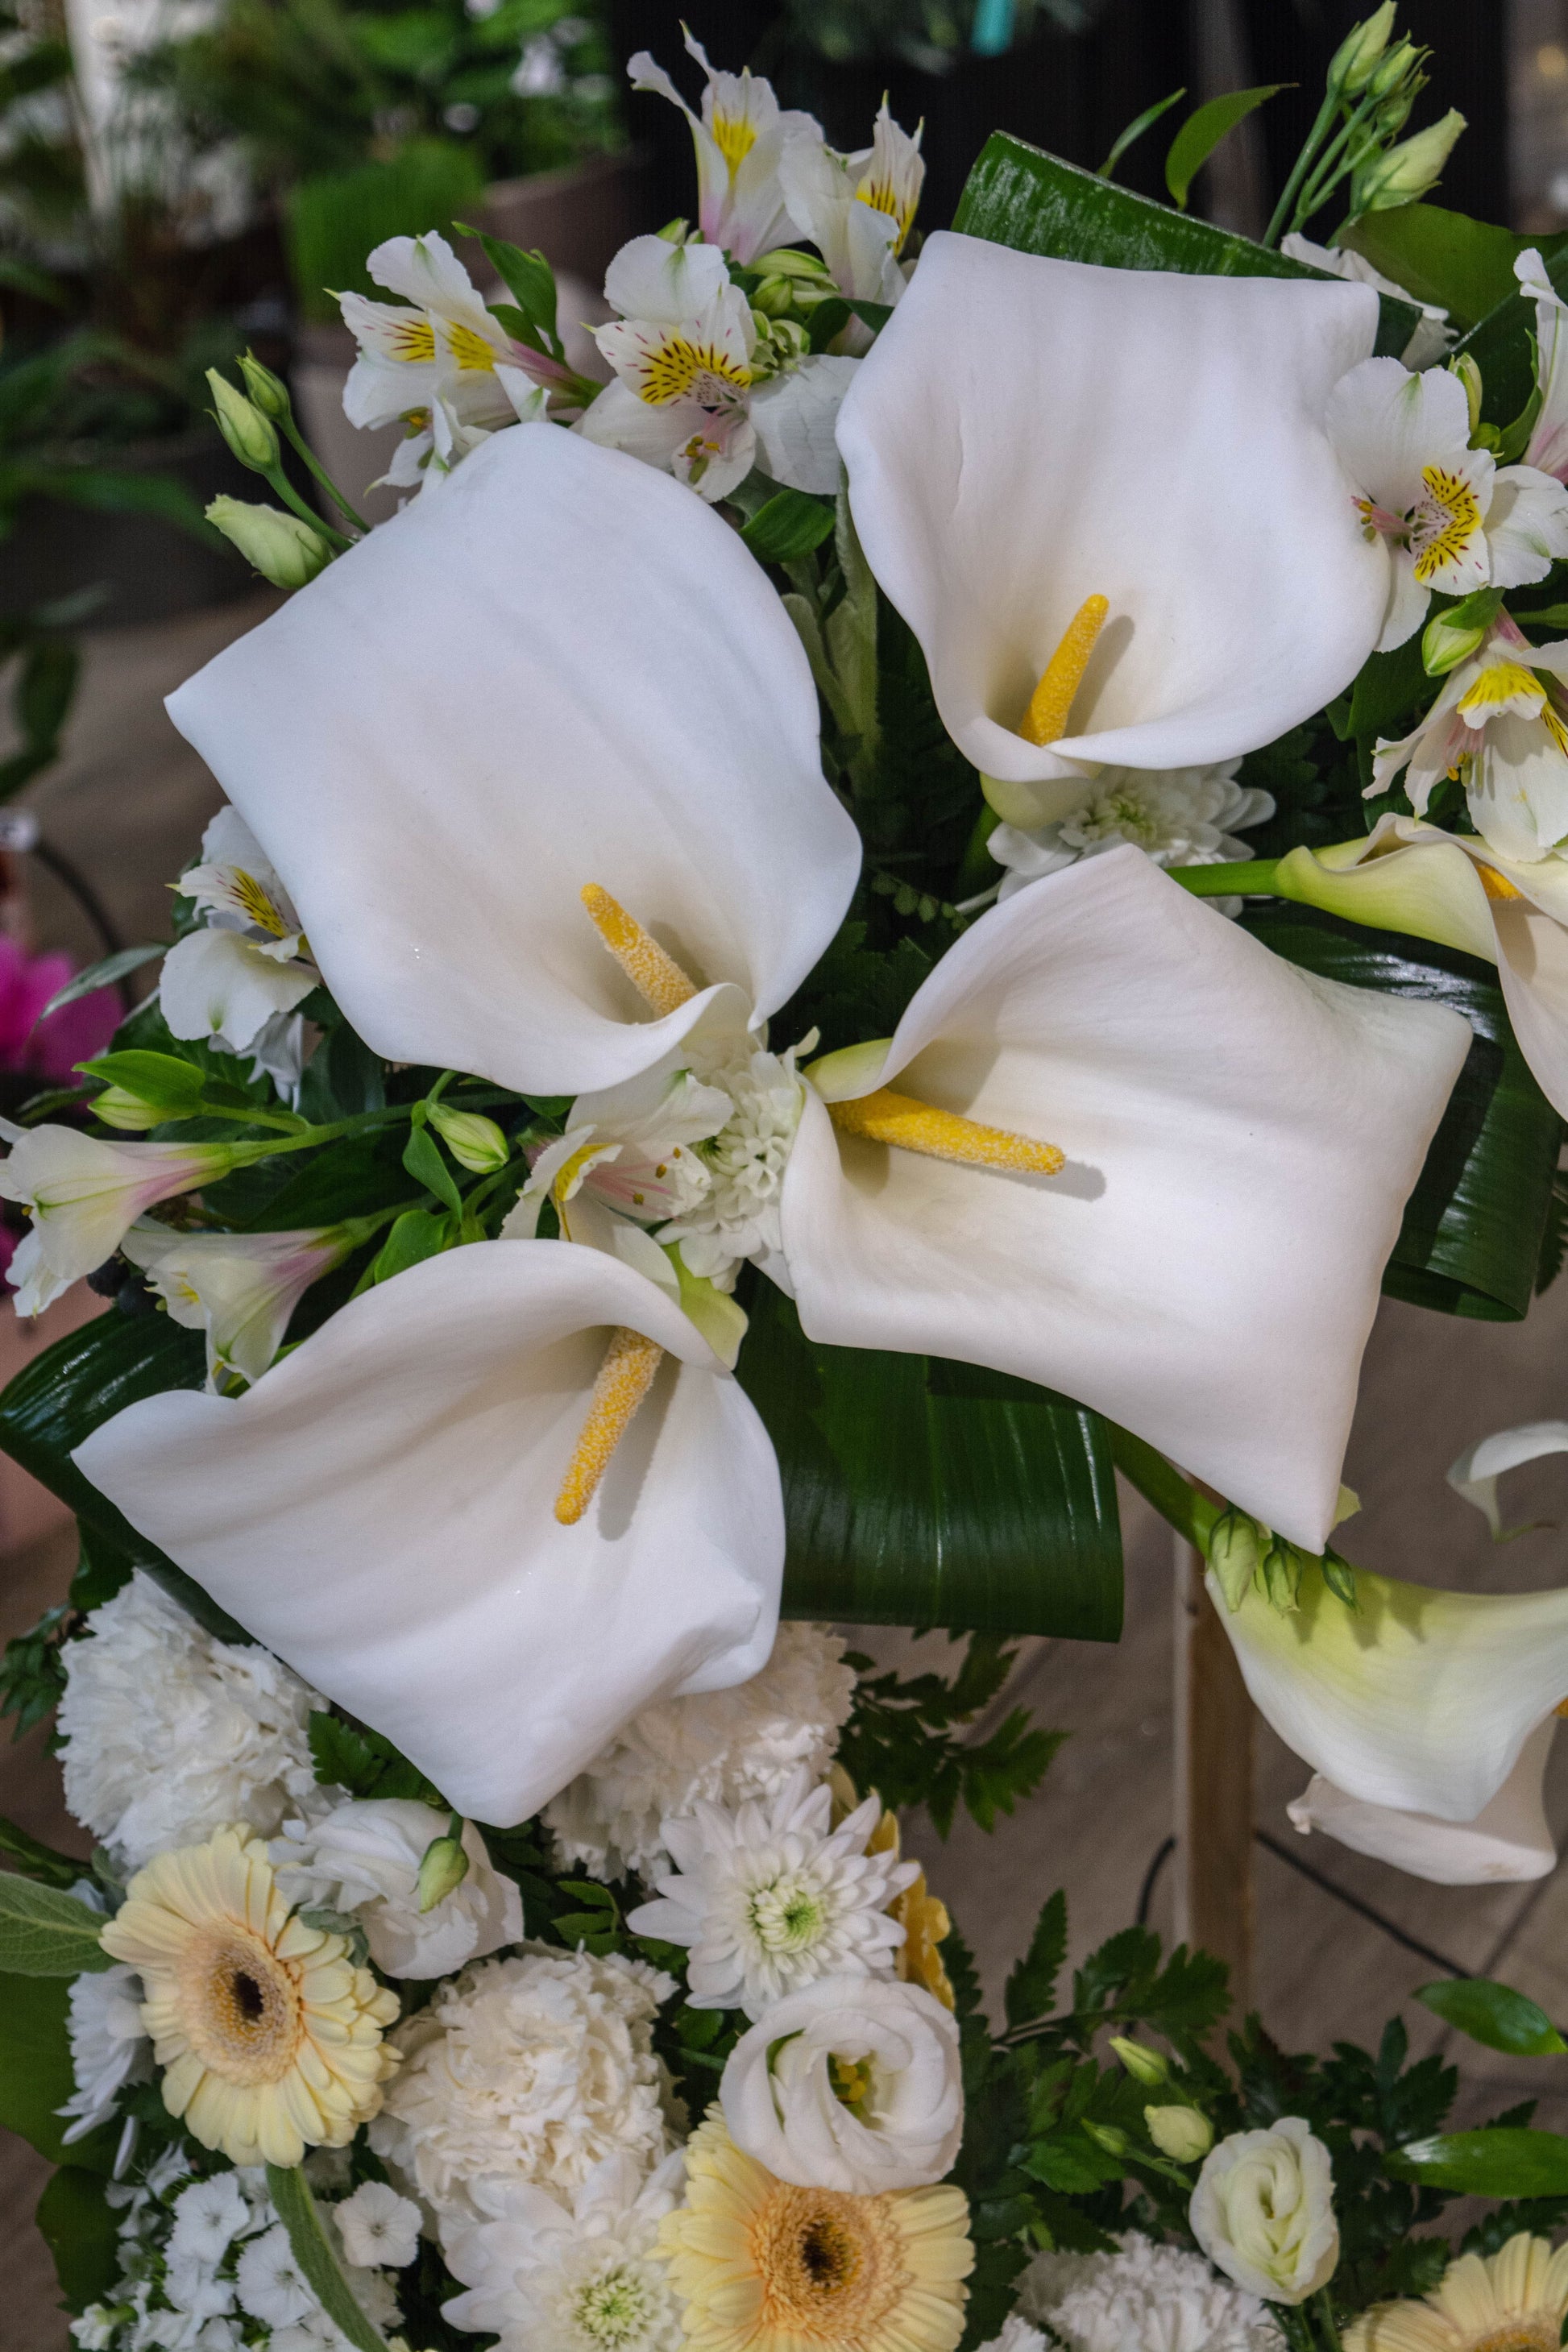 Armonie în culori pastelate: crizanteme și garoafe într-o combinație delicată, aducând o notă de empatie și respect, cu livrare GRATUITĂ în Resita